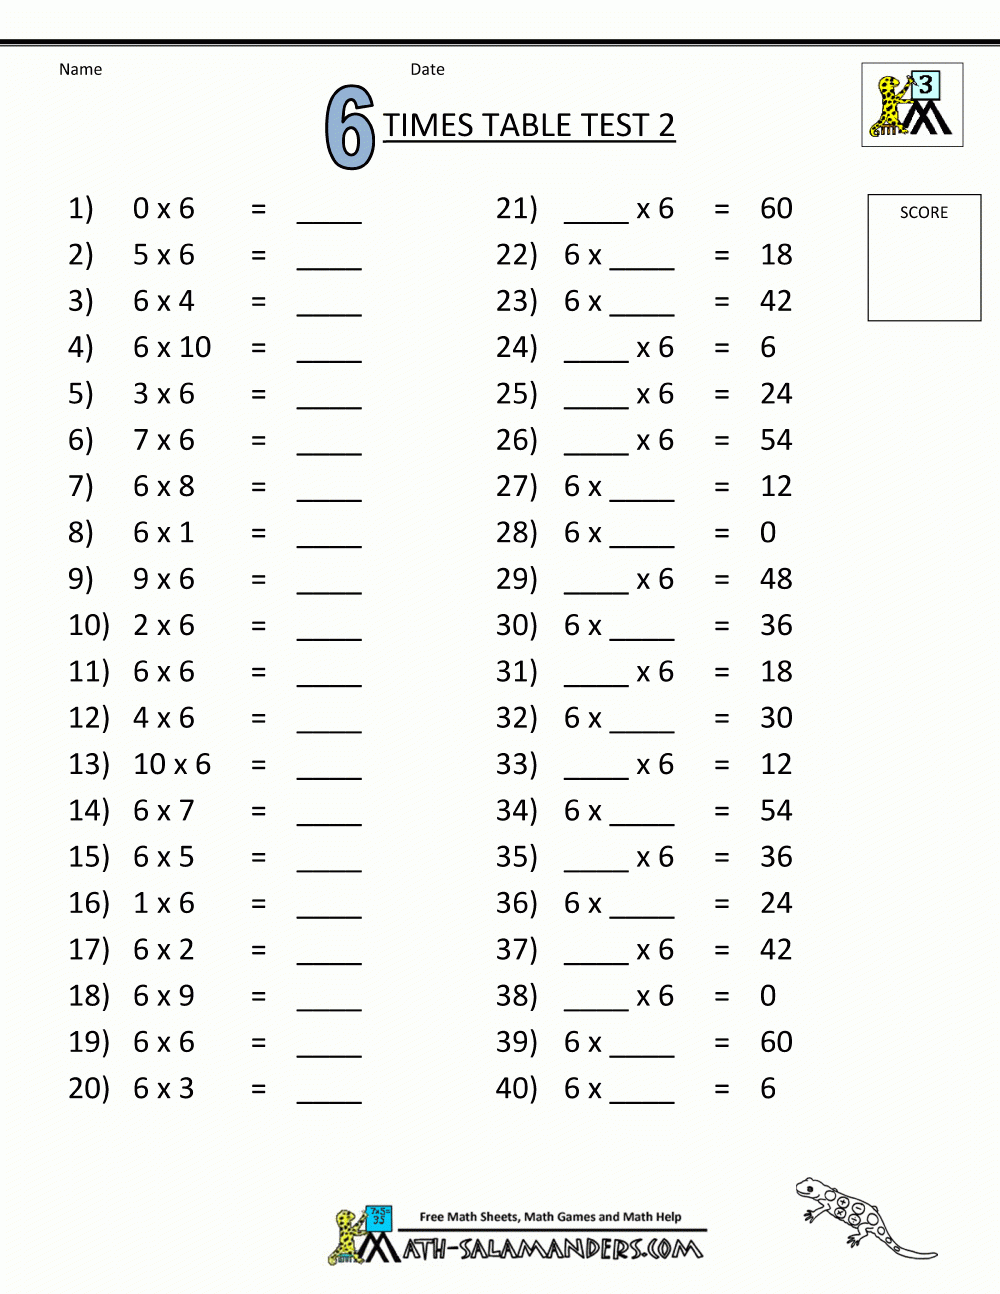 multiplication-table-worksheets-6-9-multiplication-worksheets